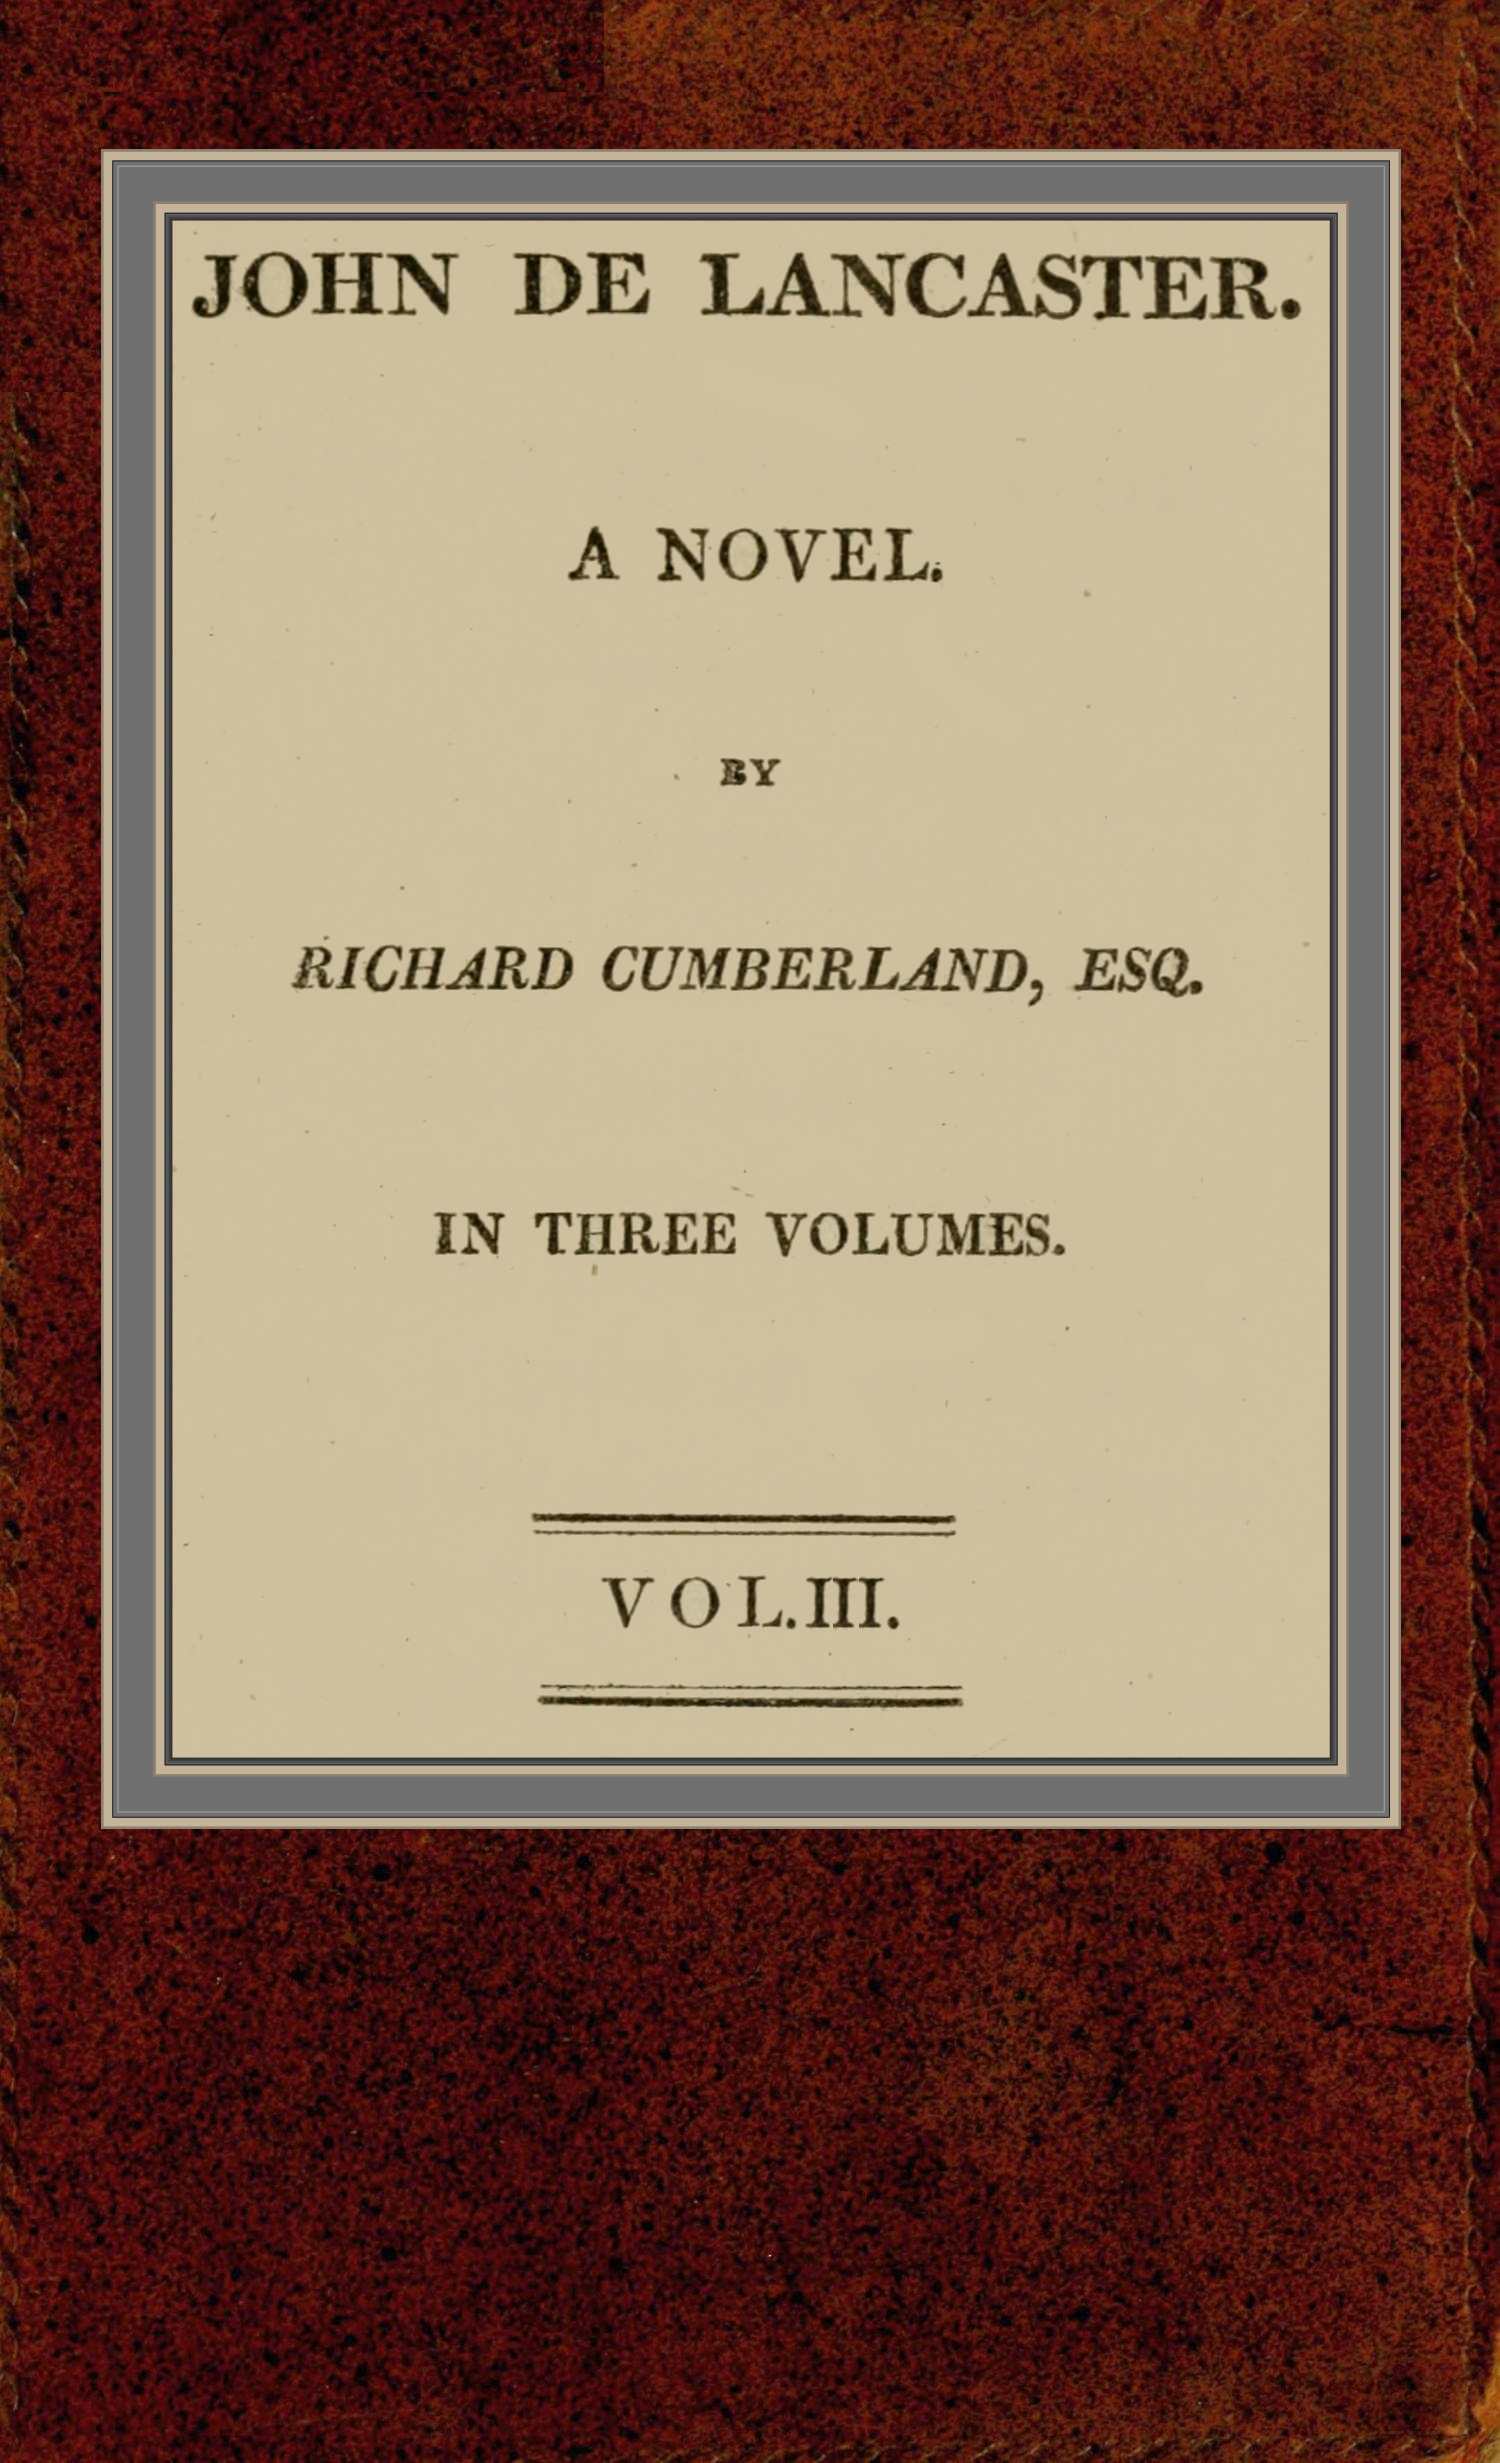 John de Lancaster: a novel; vol. III.